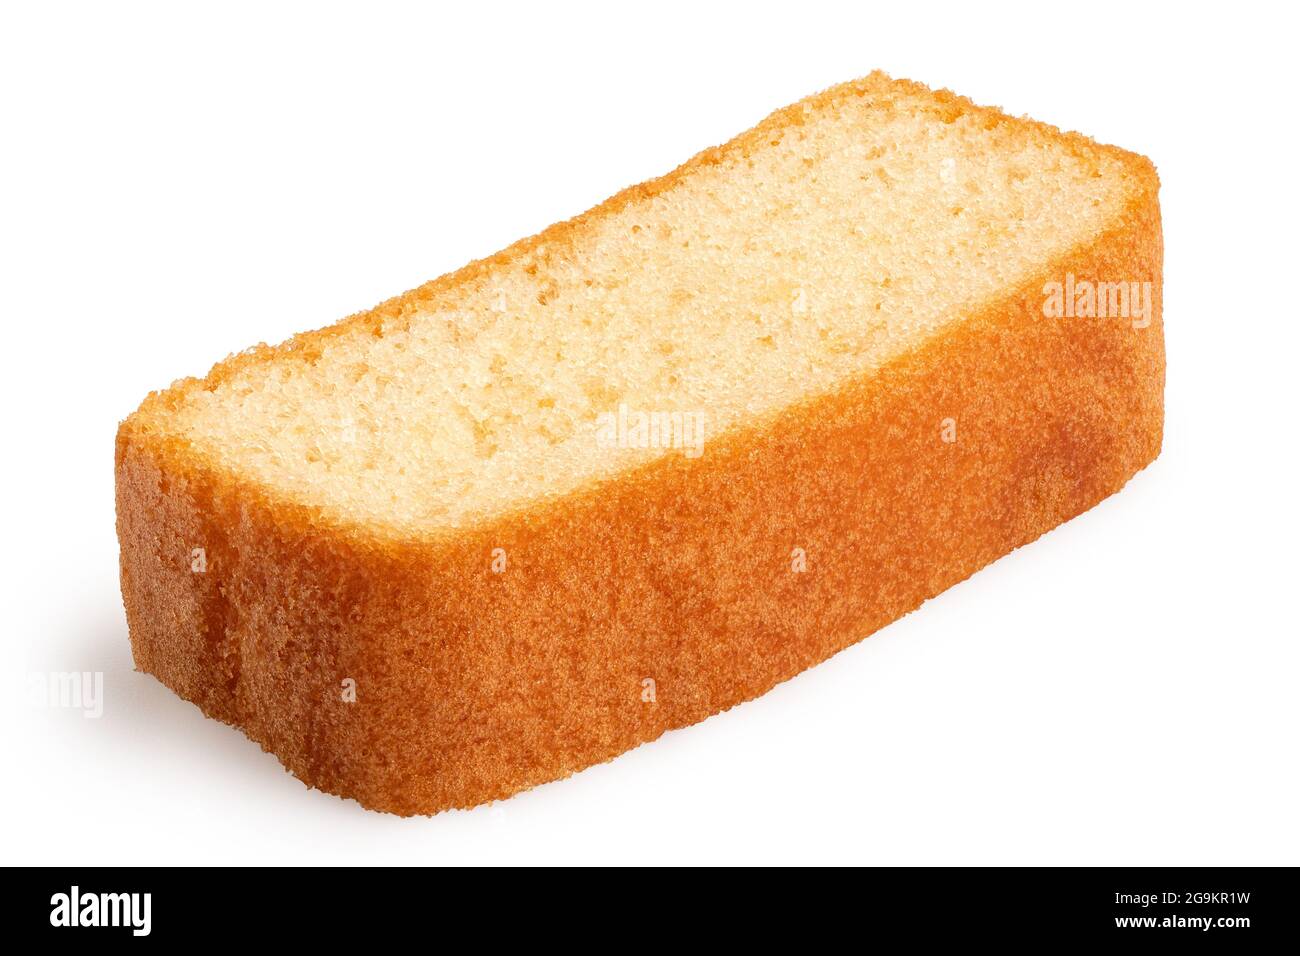 Slice of plain sponge cake lying flat isolated on white. Stock Photo